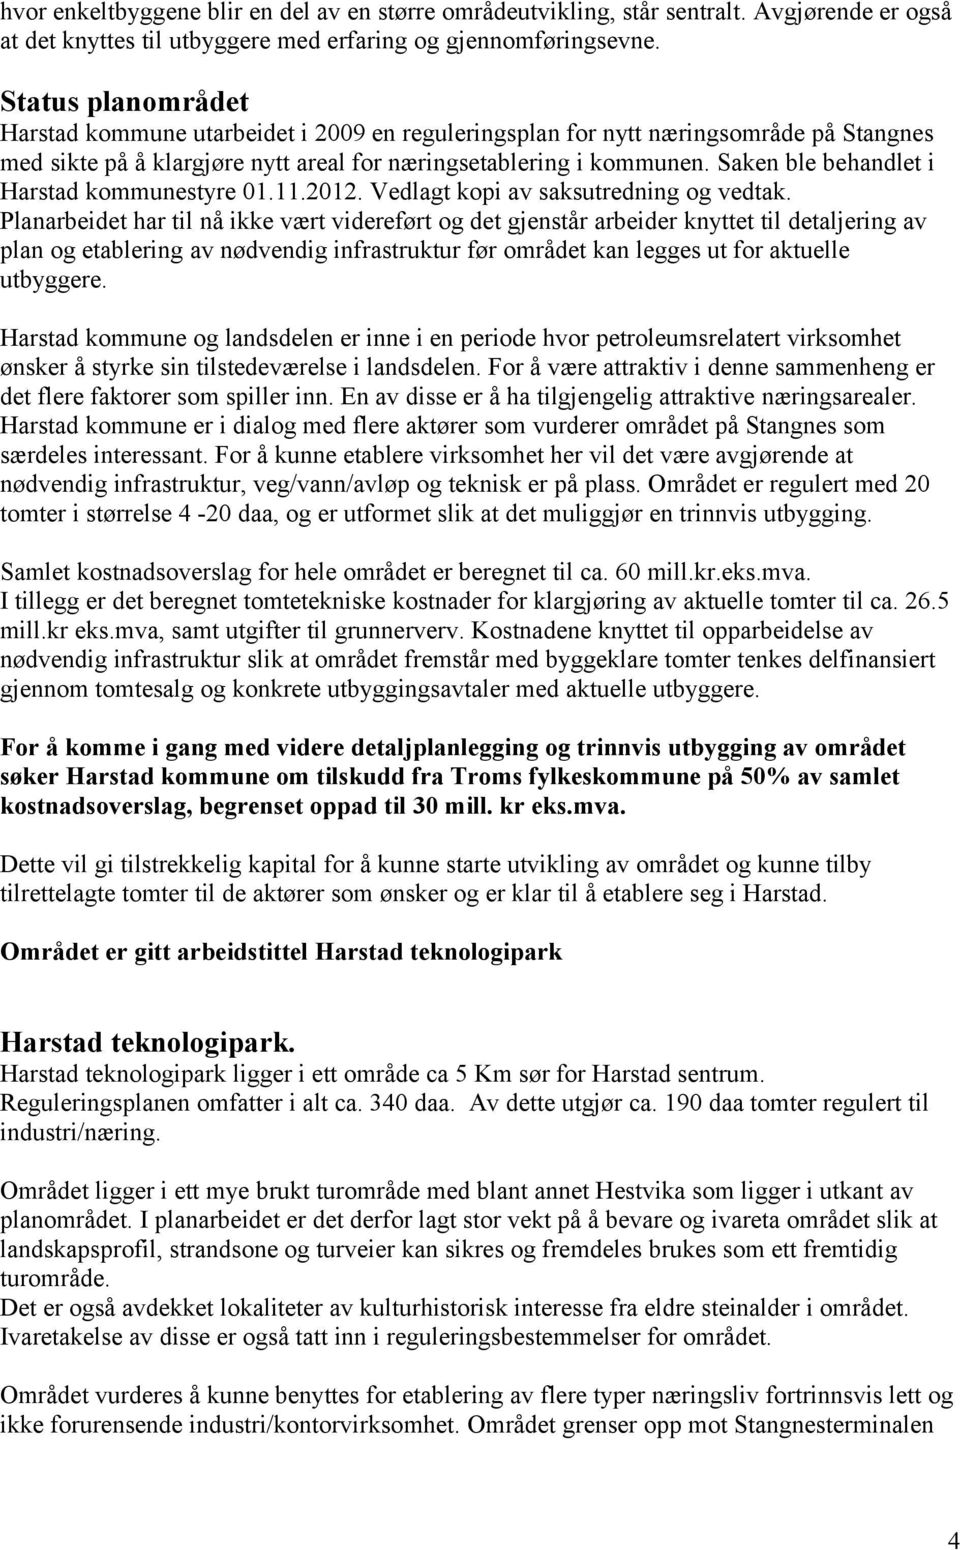 Saken ble behandlet i Harstad kommunestyre 01.11.2012. Vedlagt kopi av saksutredning og vedtak.